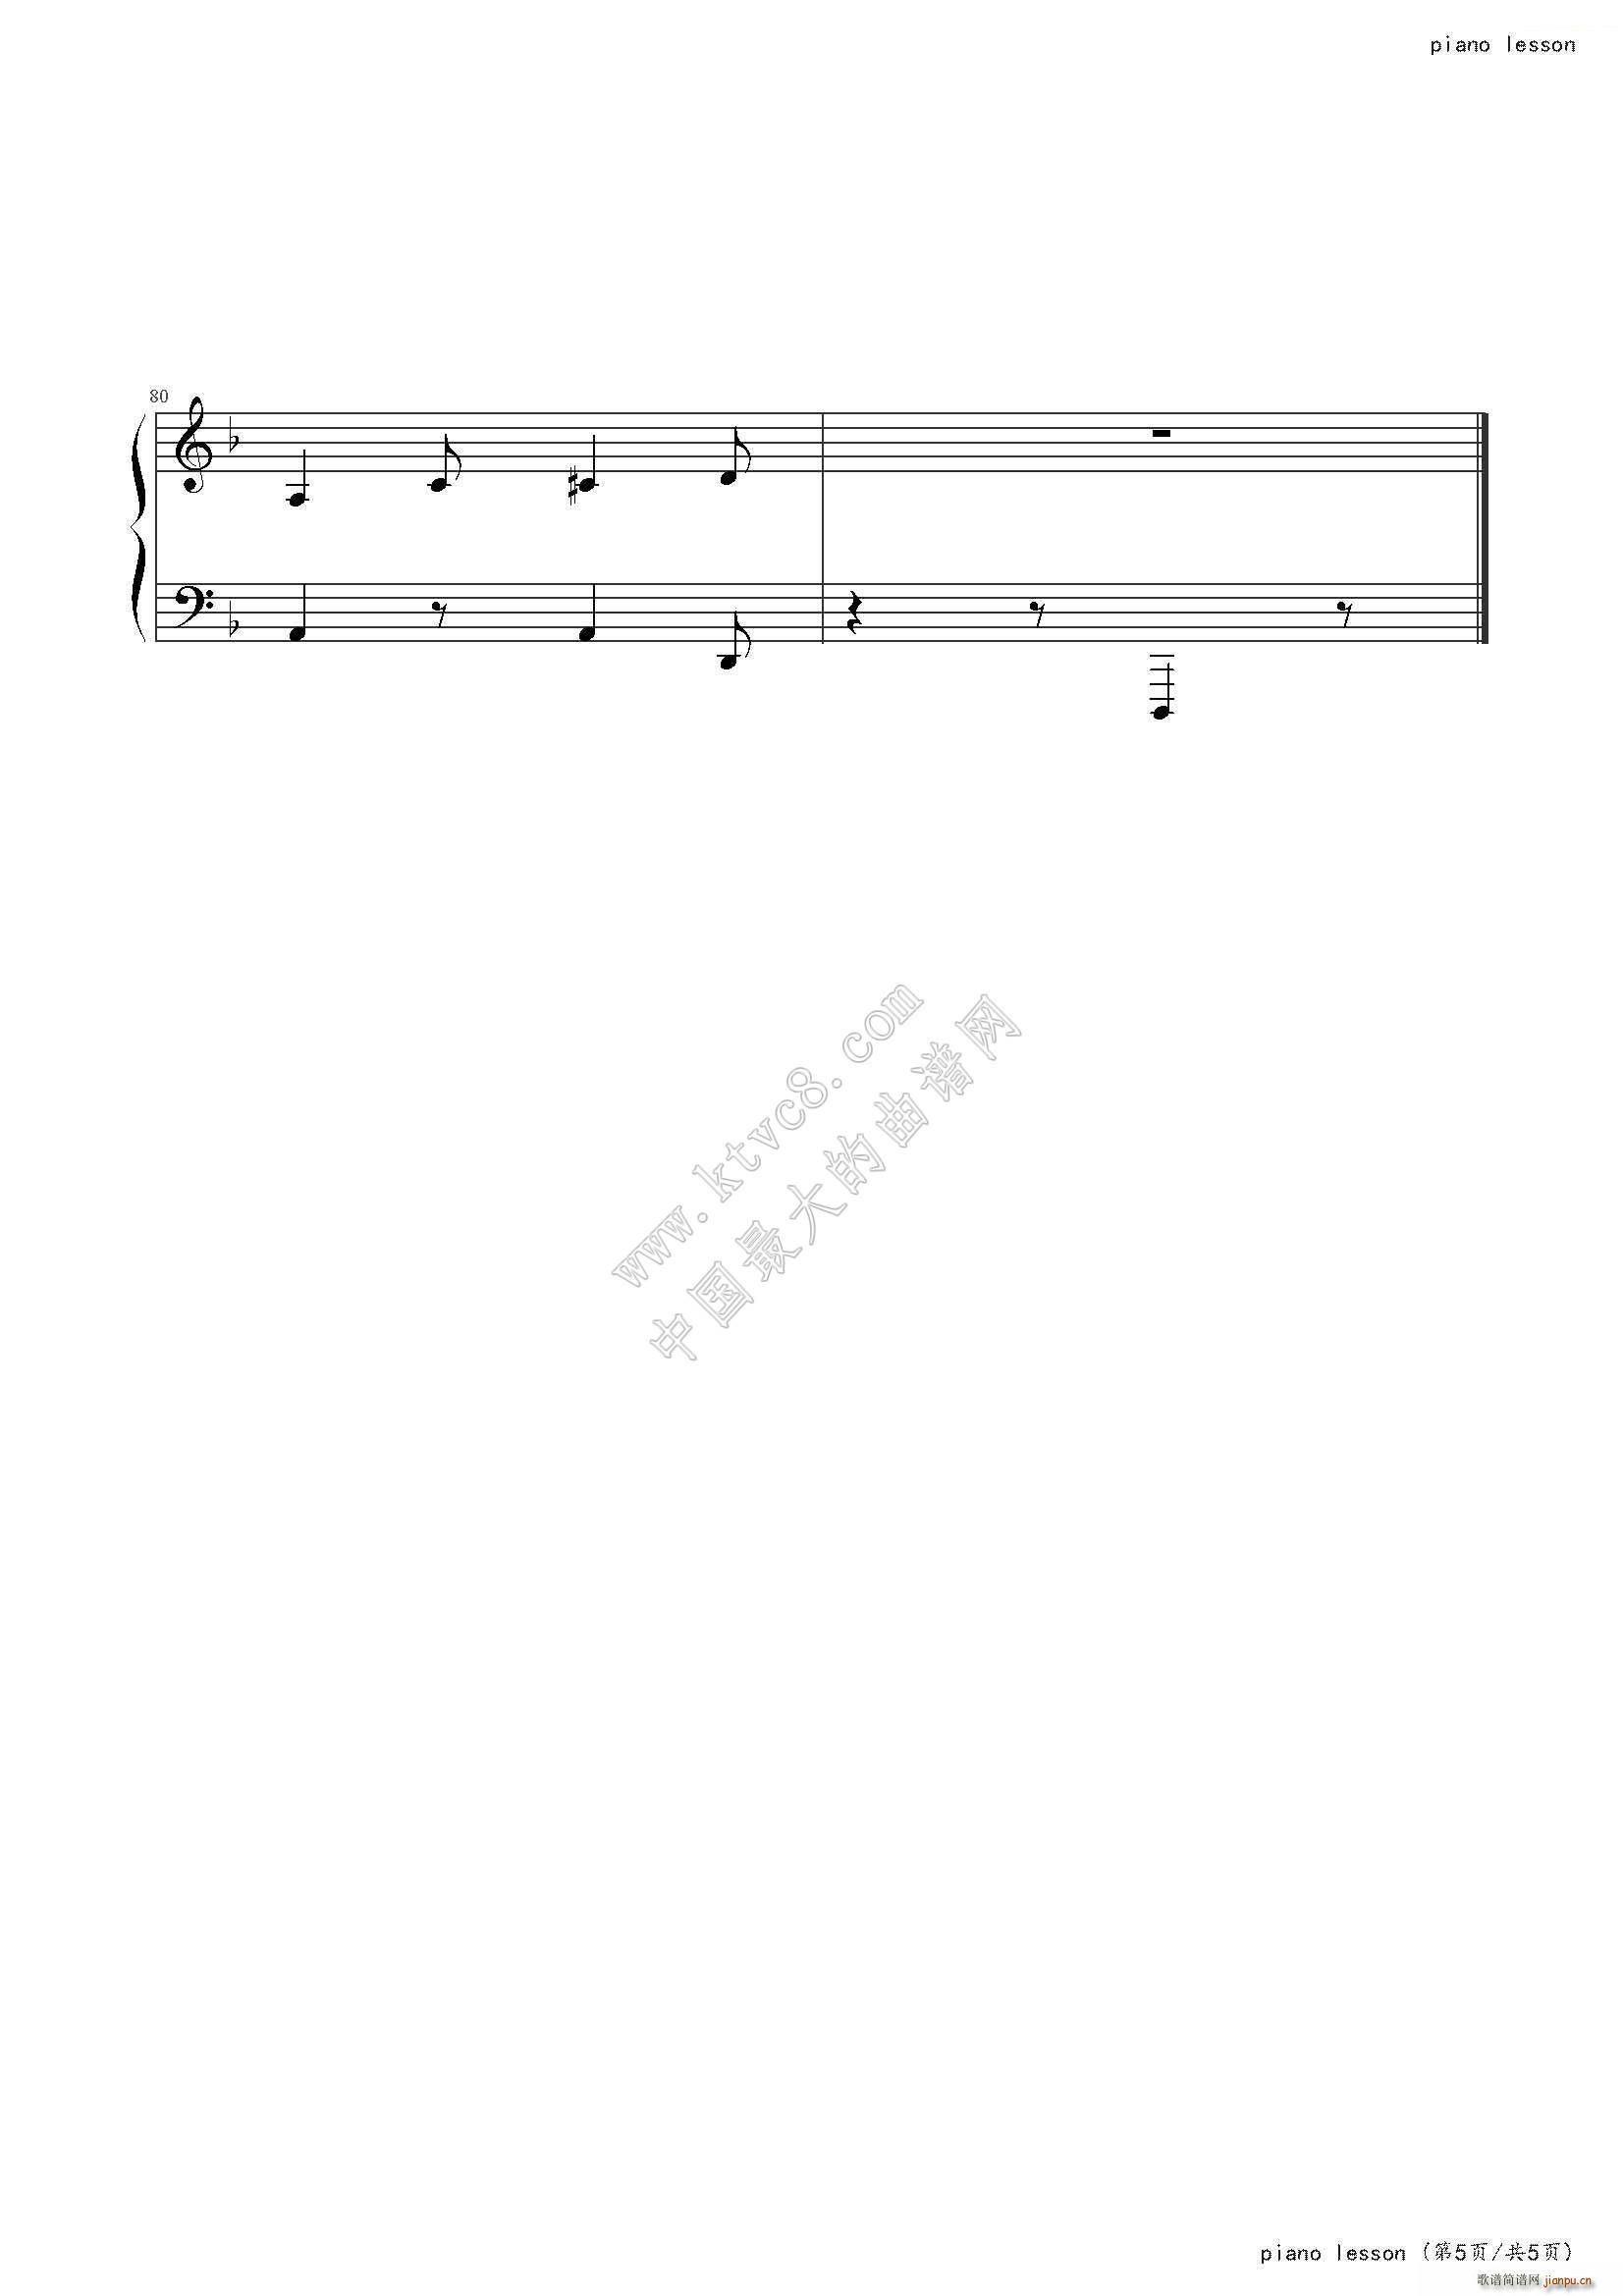 piano lesson()6